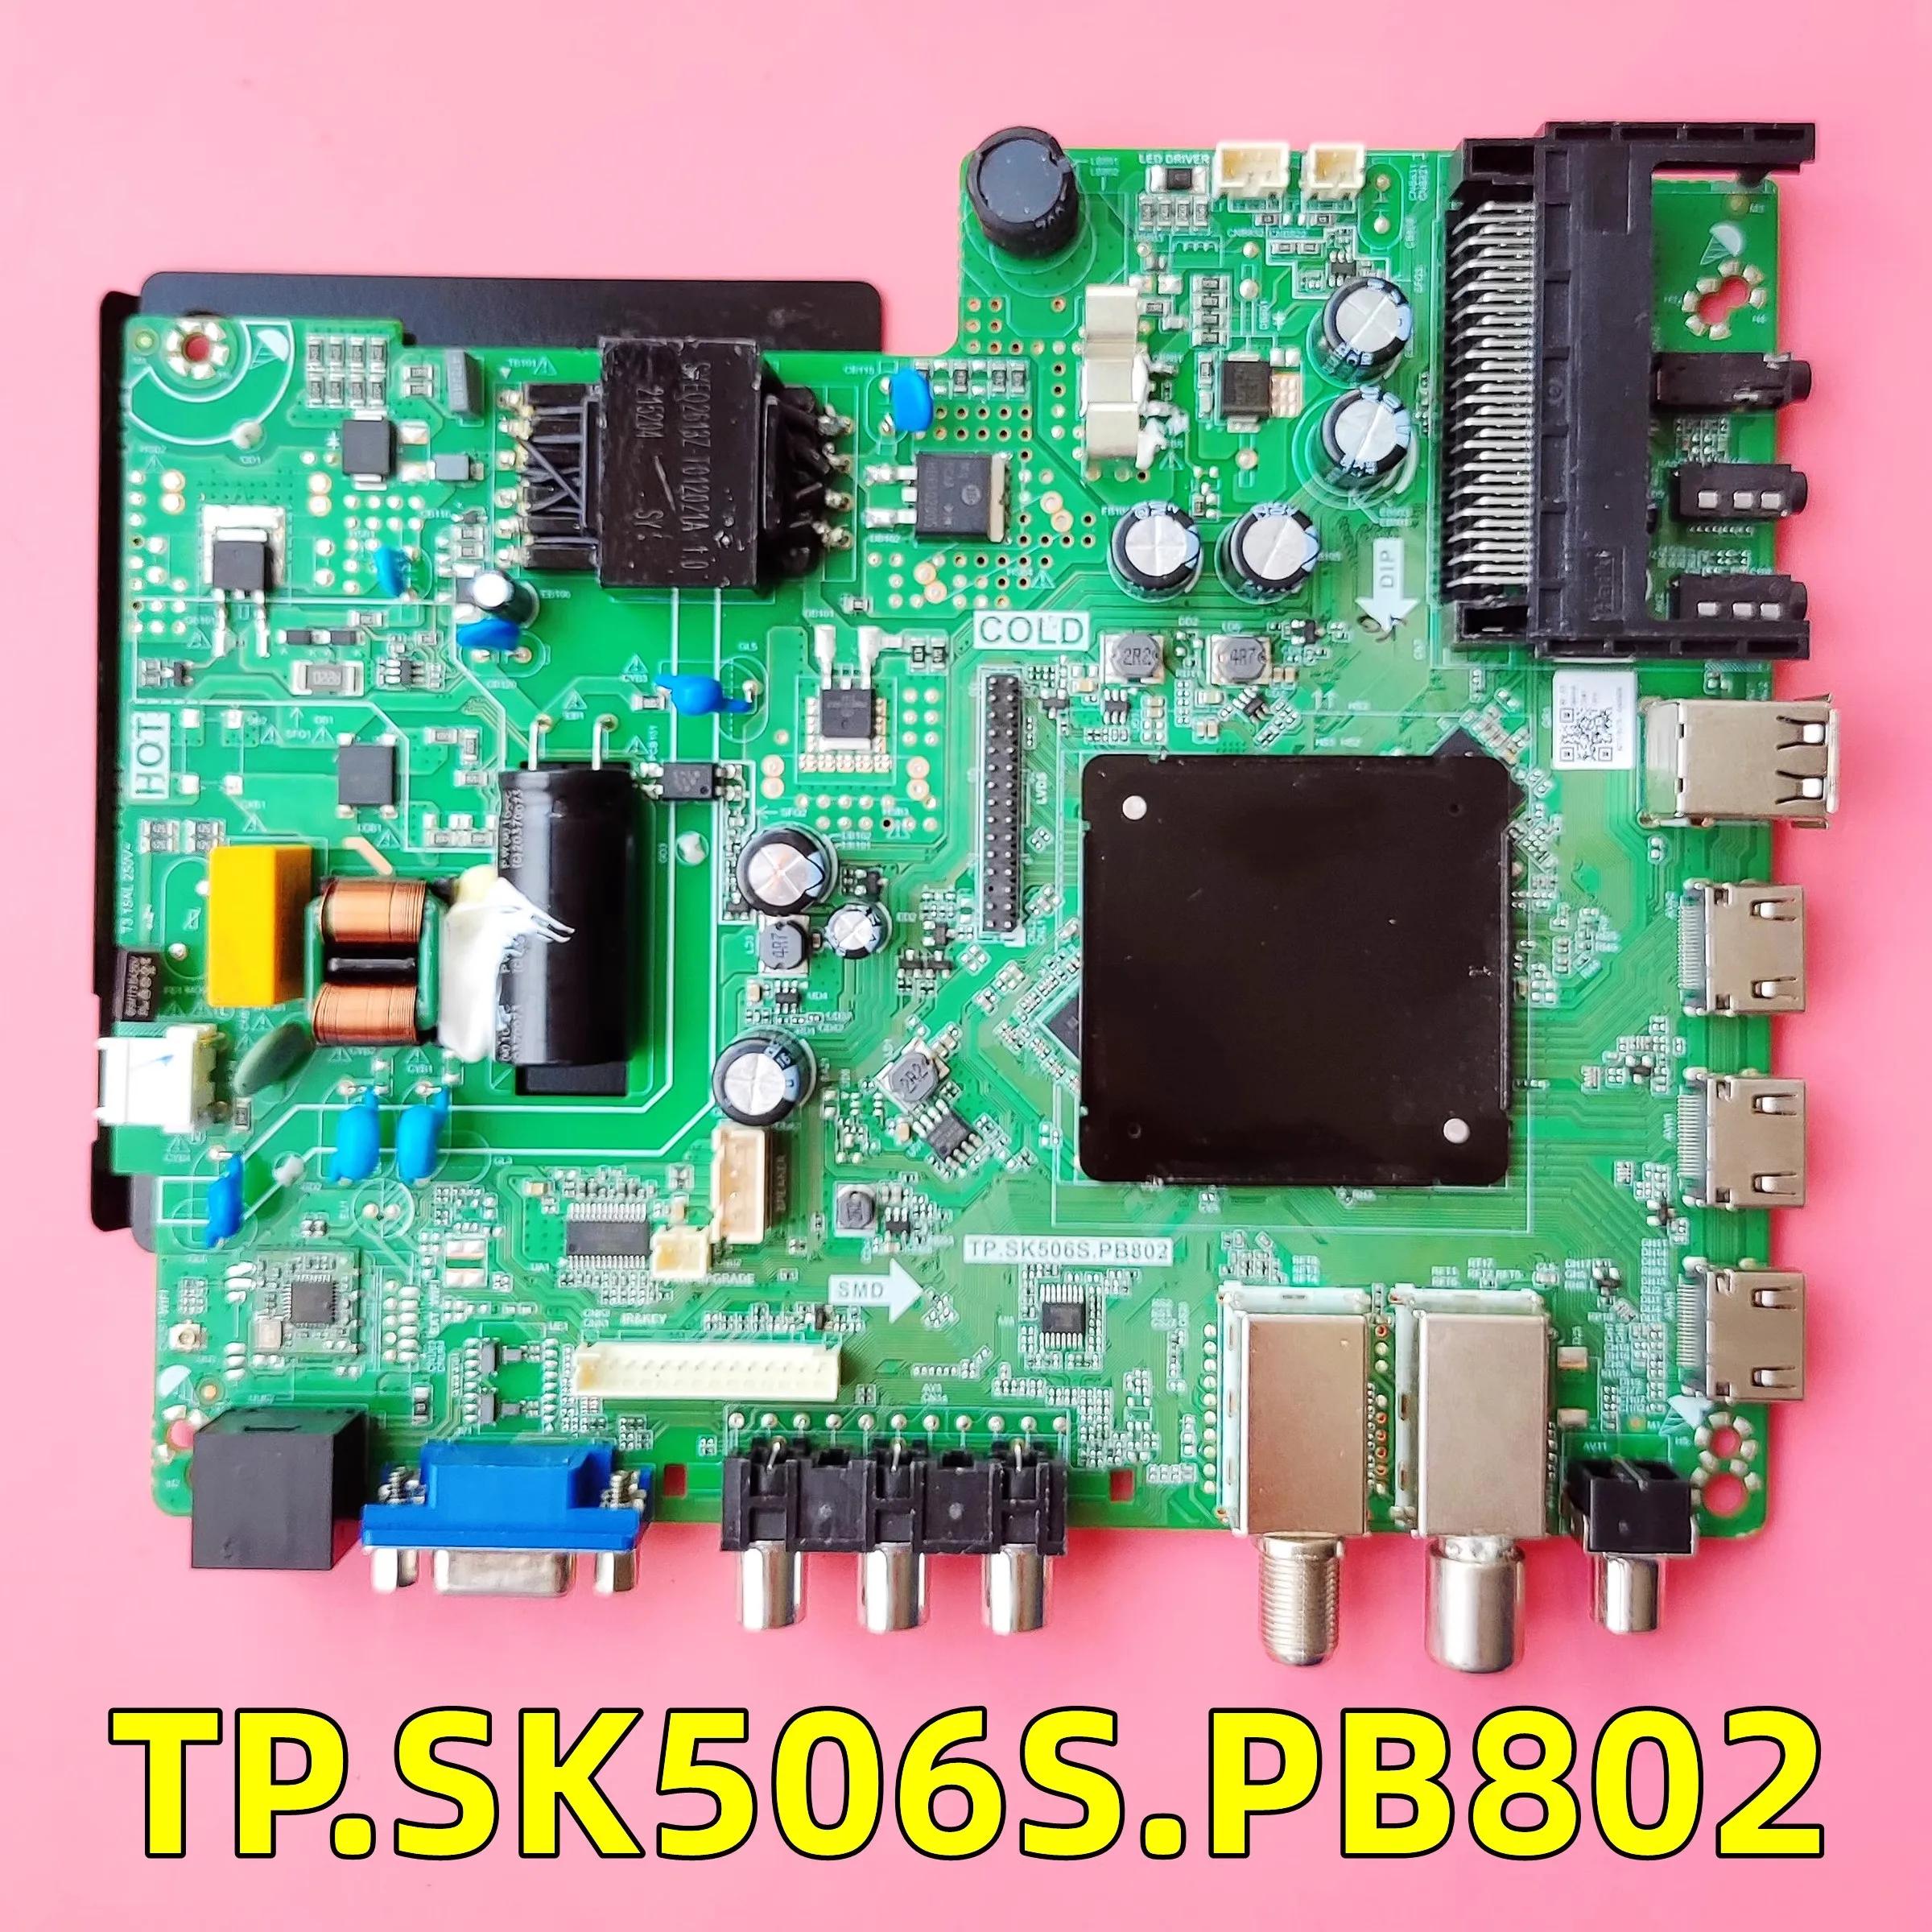 TP.SK506S.PB802